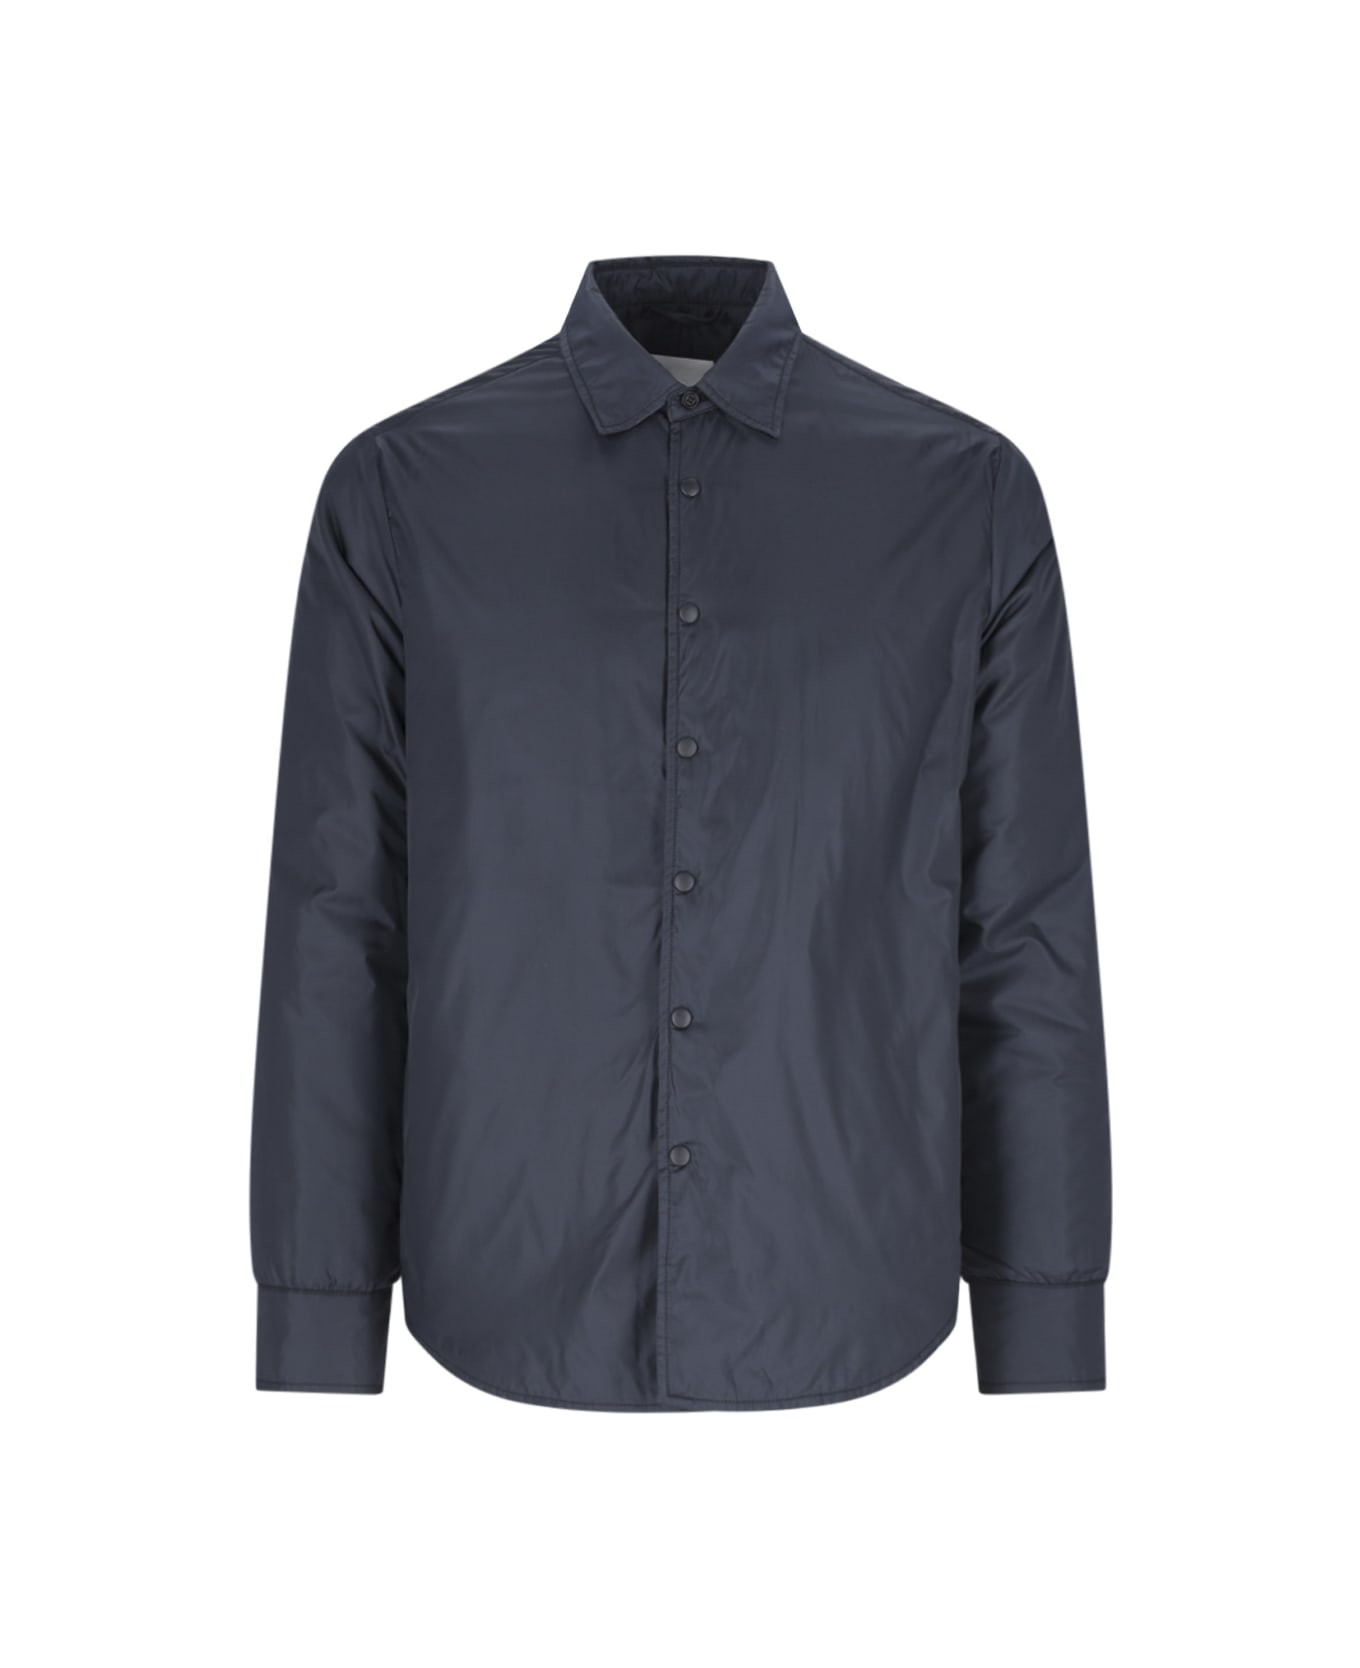 Aspesi 'glue' Shirt Jacket - BLUE ジャケット